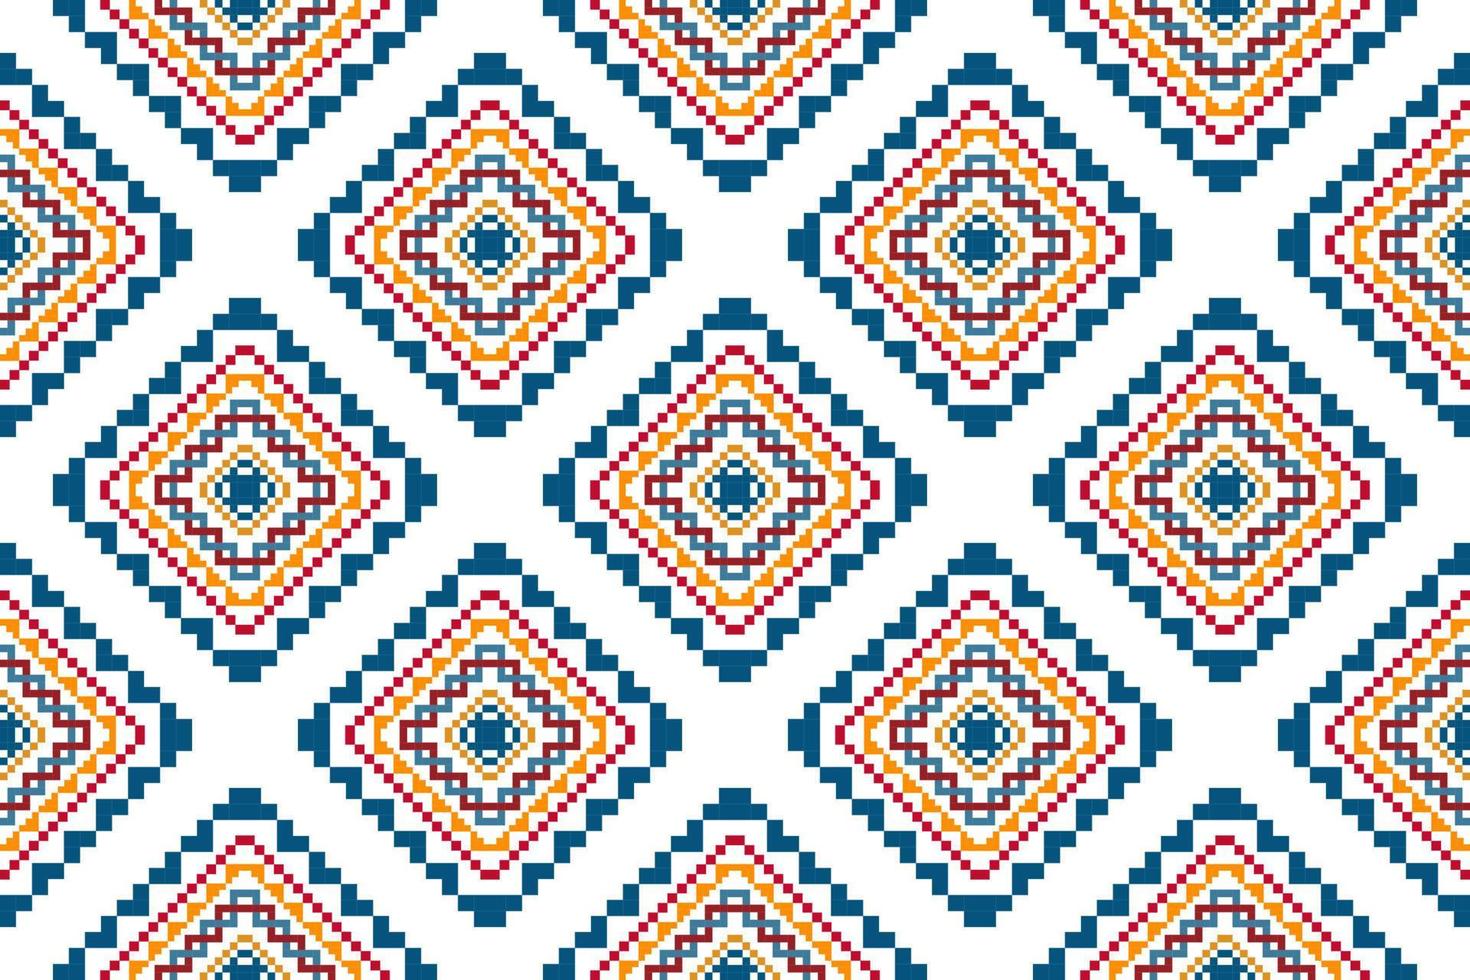 ikat etnisk sömlös mönster Hem dekoration design. aztec tyg matta boho mandalas textil- dekor tapet. stam- inföding motiv folk traditionell broderi vektor illustrationer bakgrund